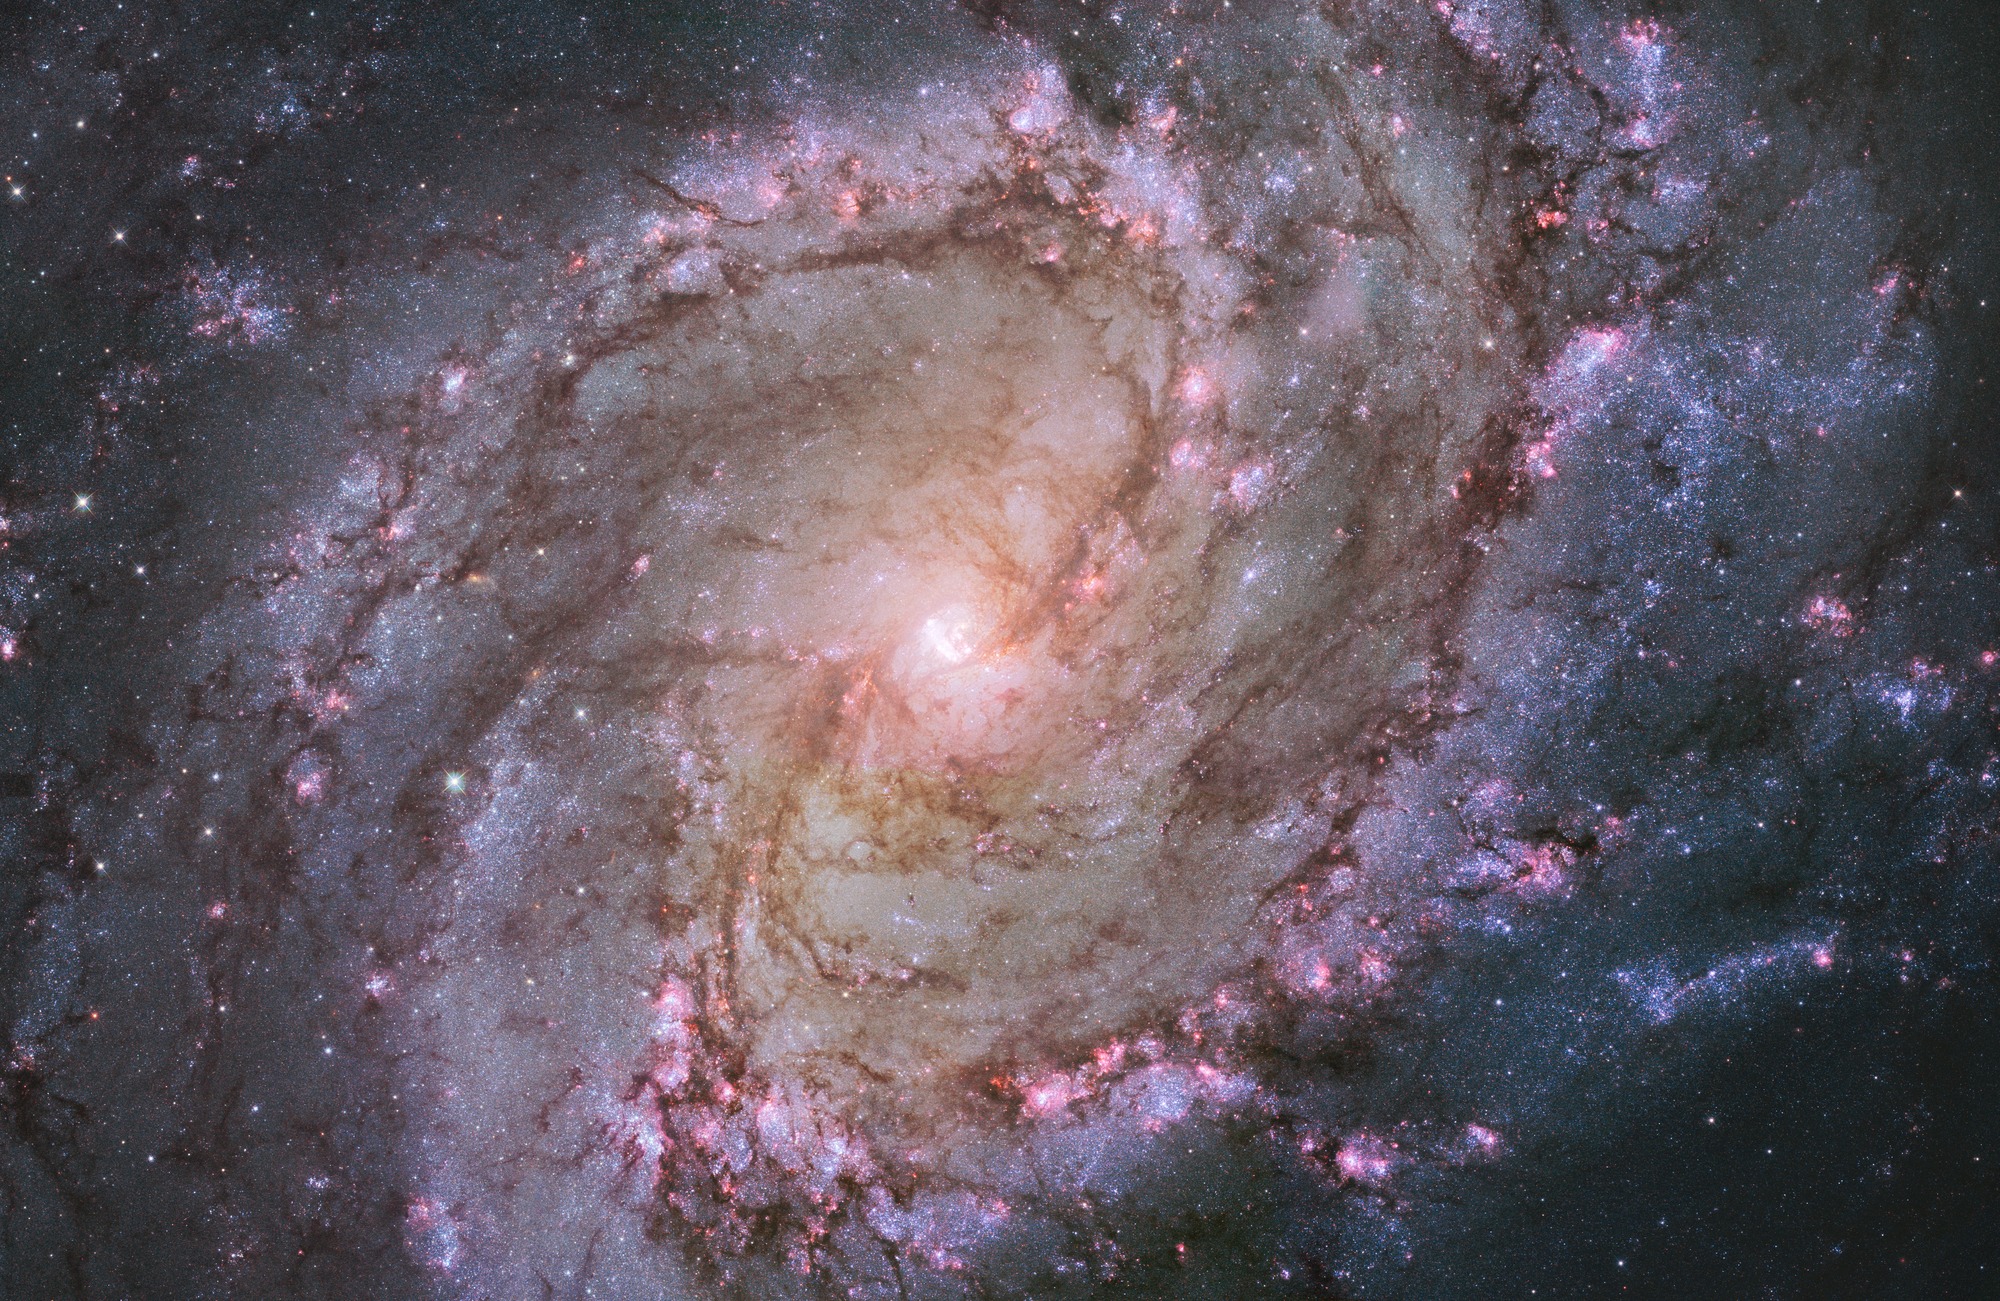 Spiral Galaxy M83 Wallpaper Mural Wallsauce Us